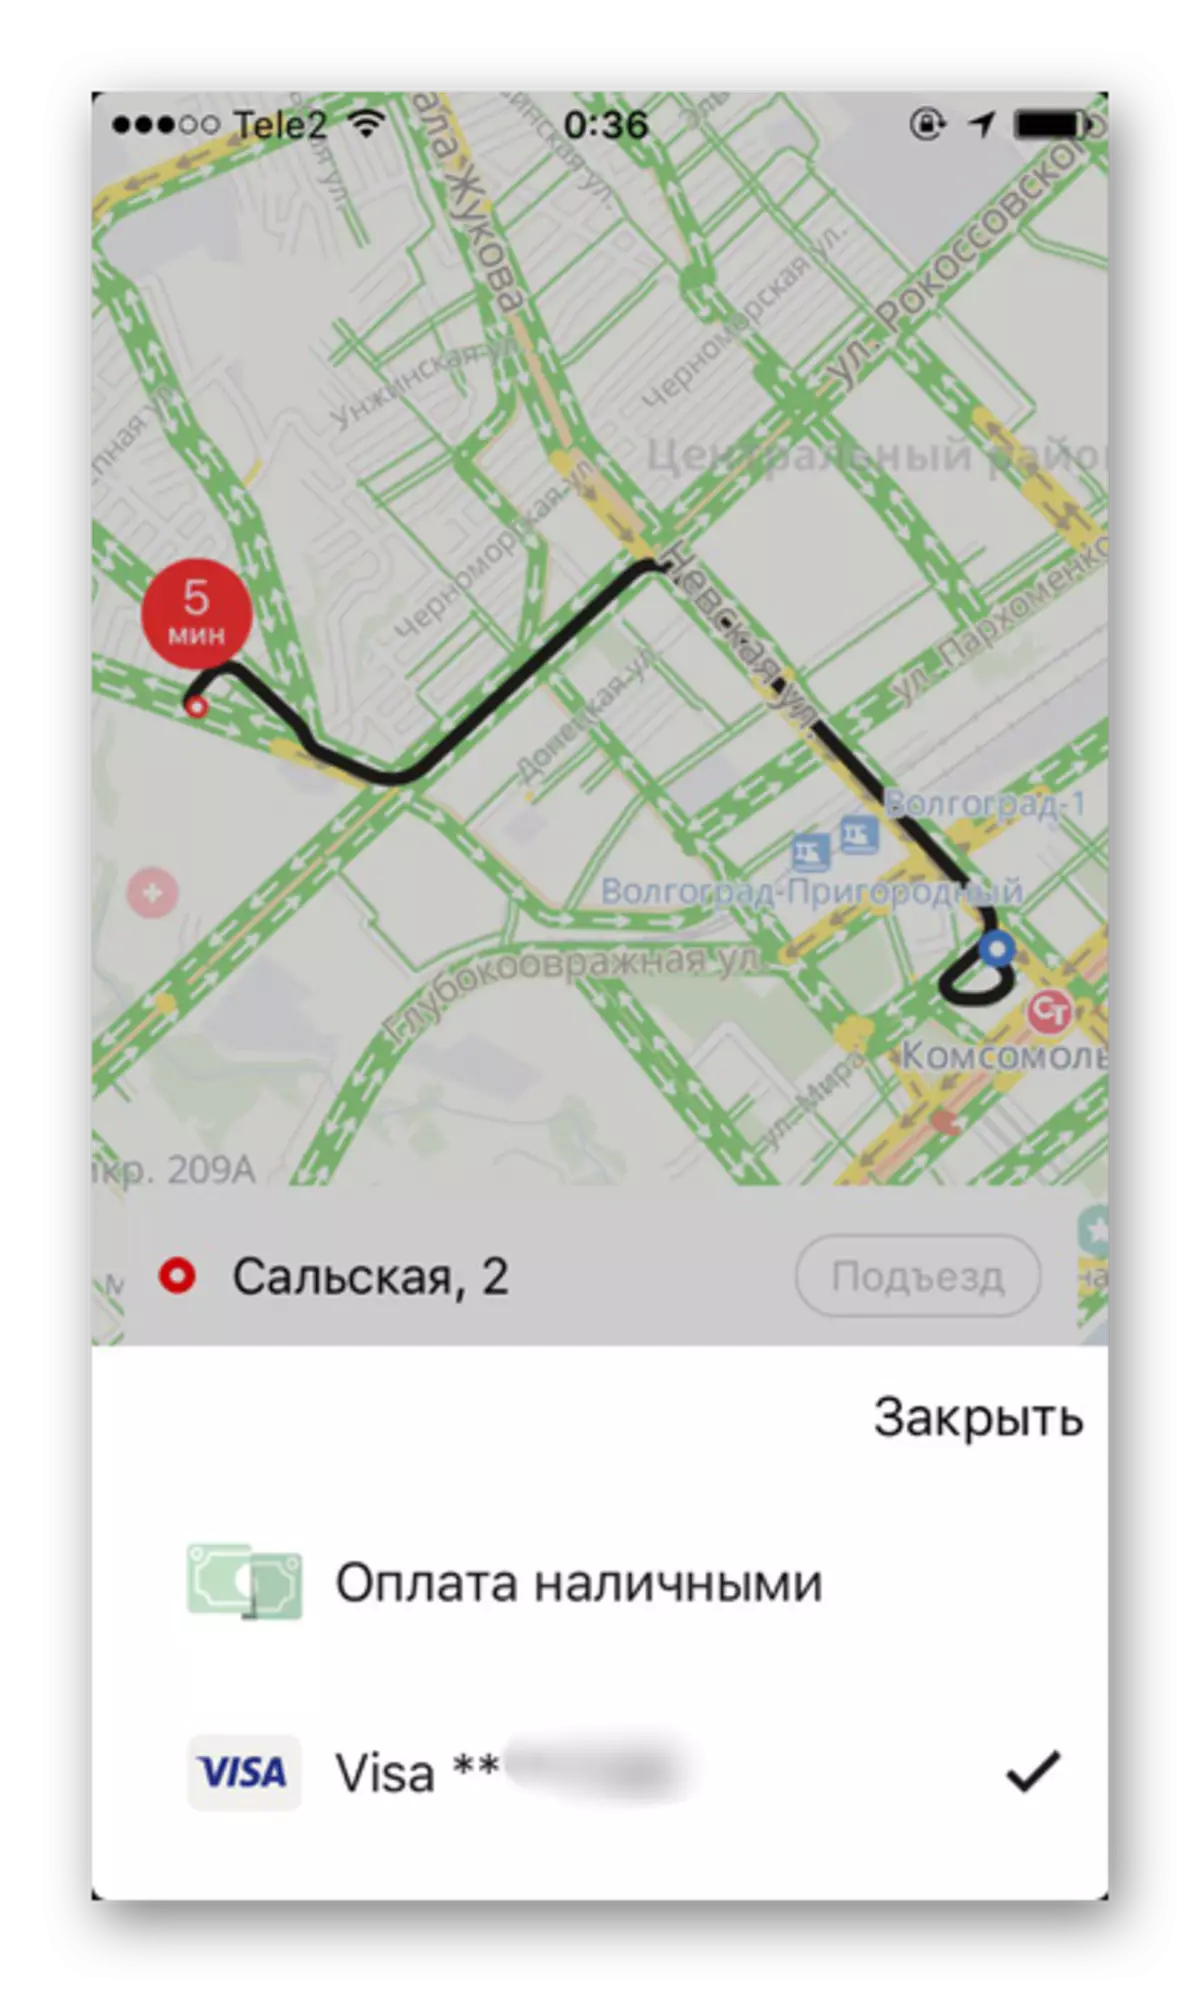 IPhone पर yandex.taxi एप्लिकेशन में एक विशिष्ट शहर में उपलब्ध भुगतान विधियां